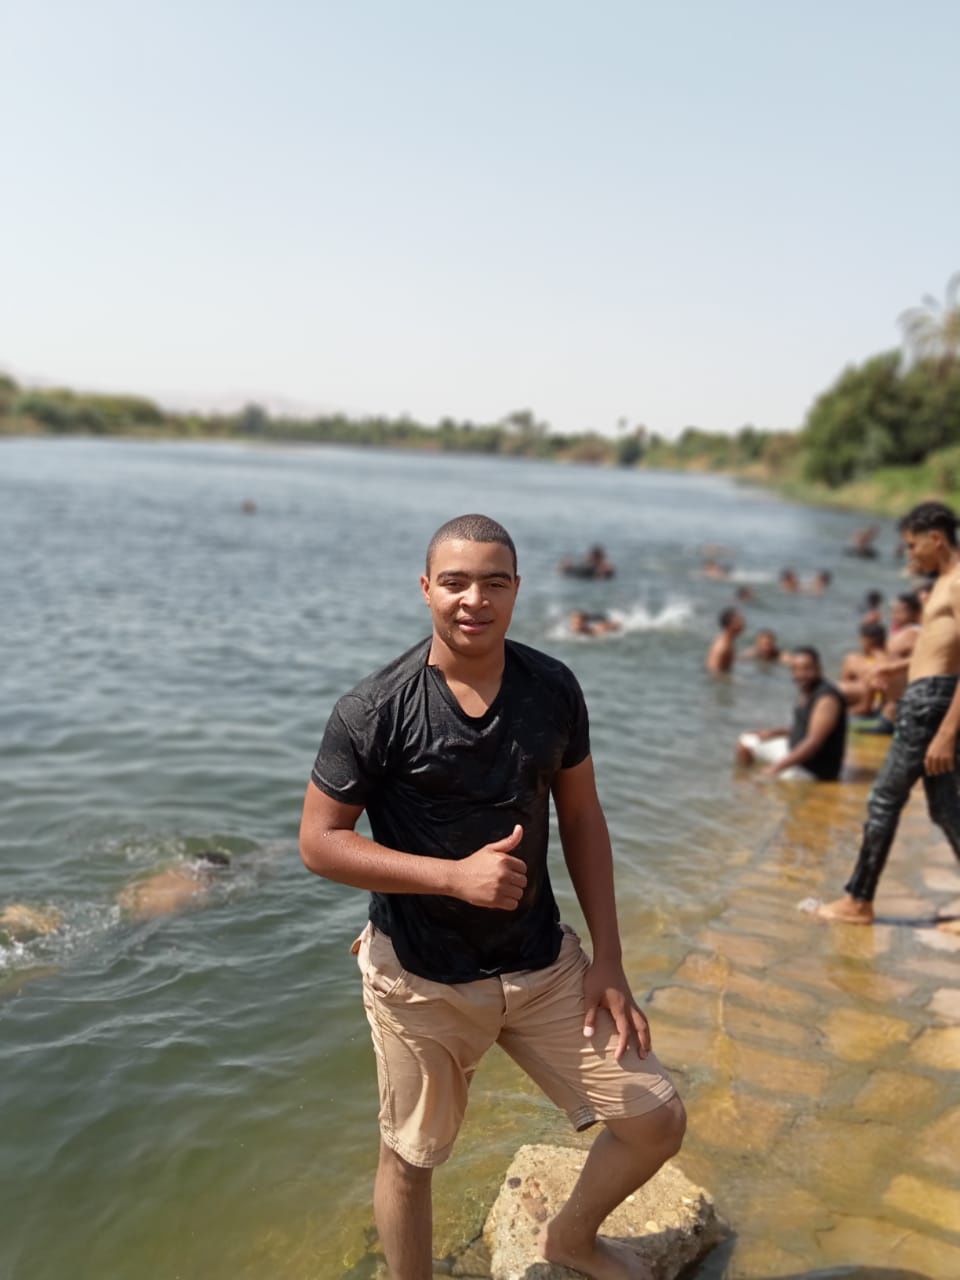 شباب الأقصر يهربون من حرارة الطقس بعد الجمعة بالسباحة فى نهر النيل